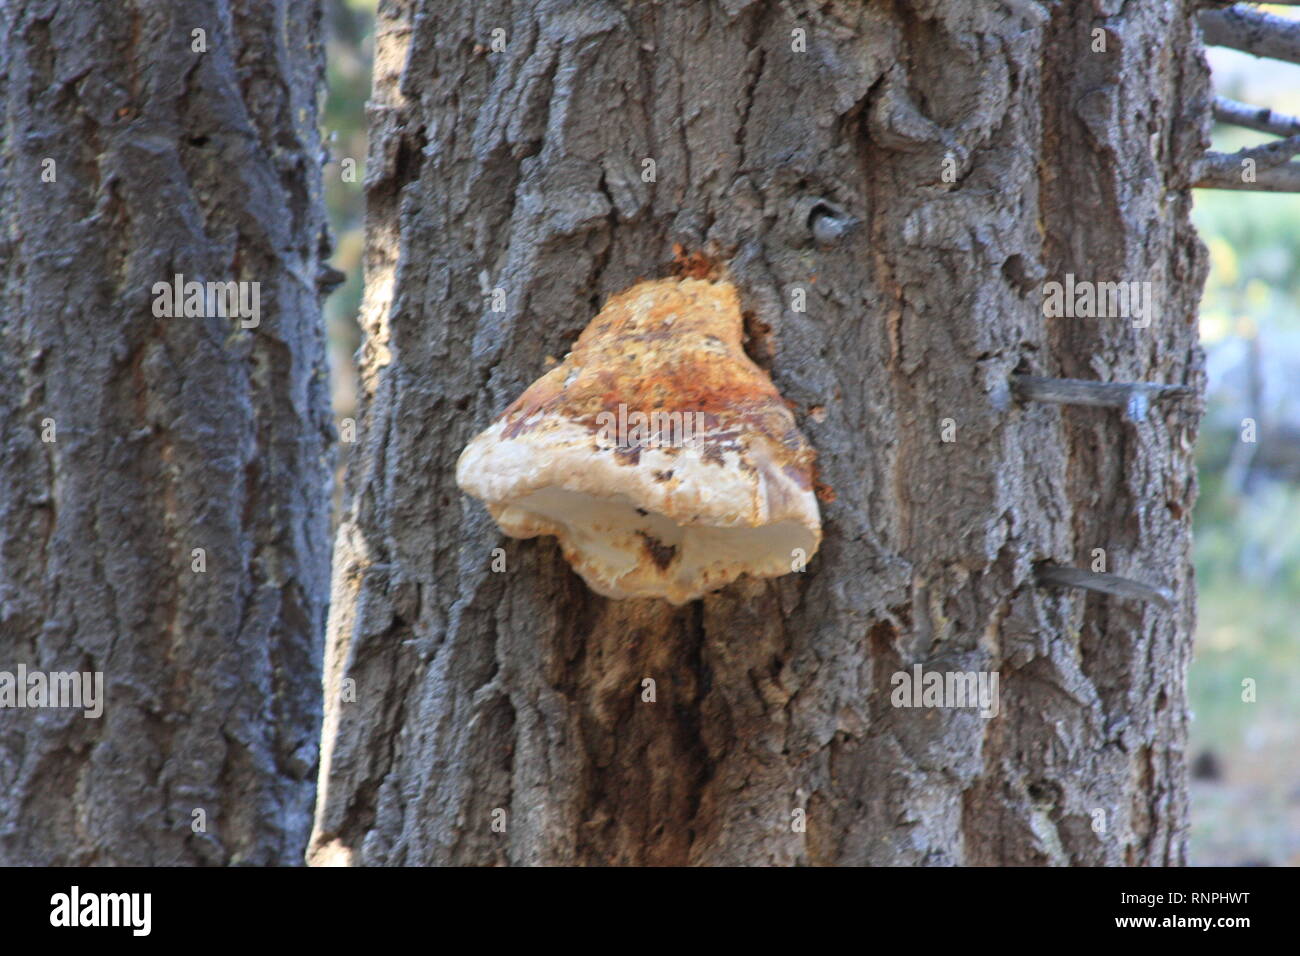 Fungi on Pine Tree Stock Photo